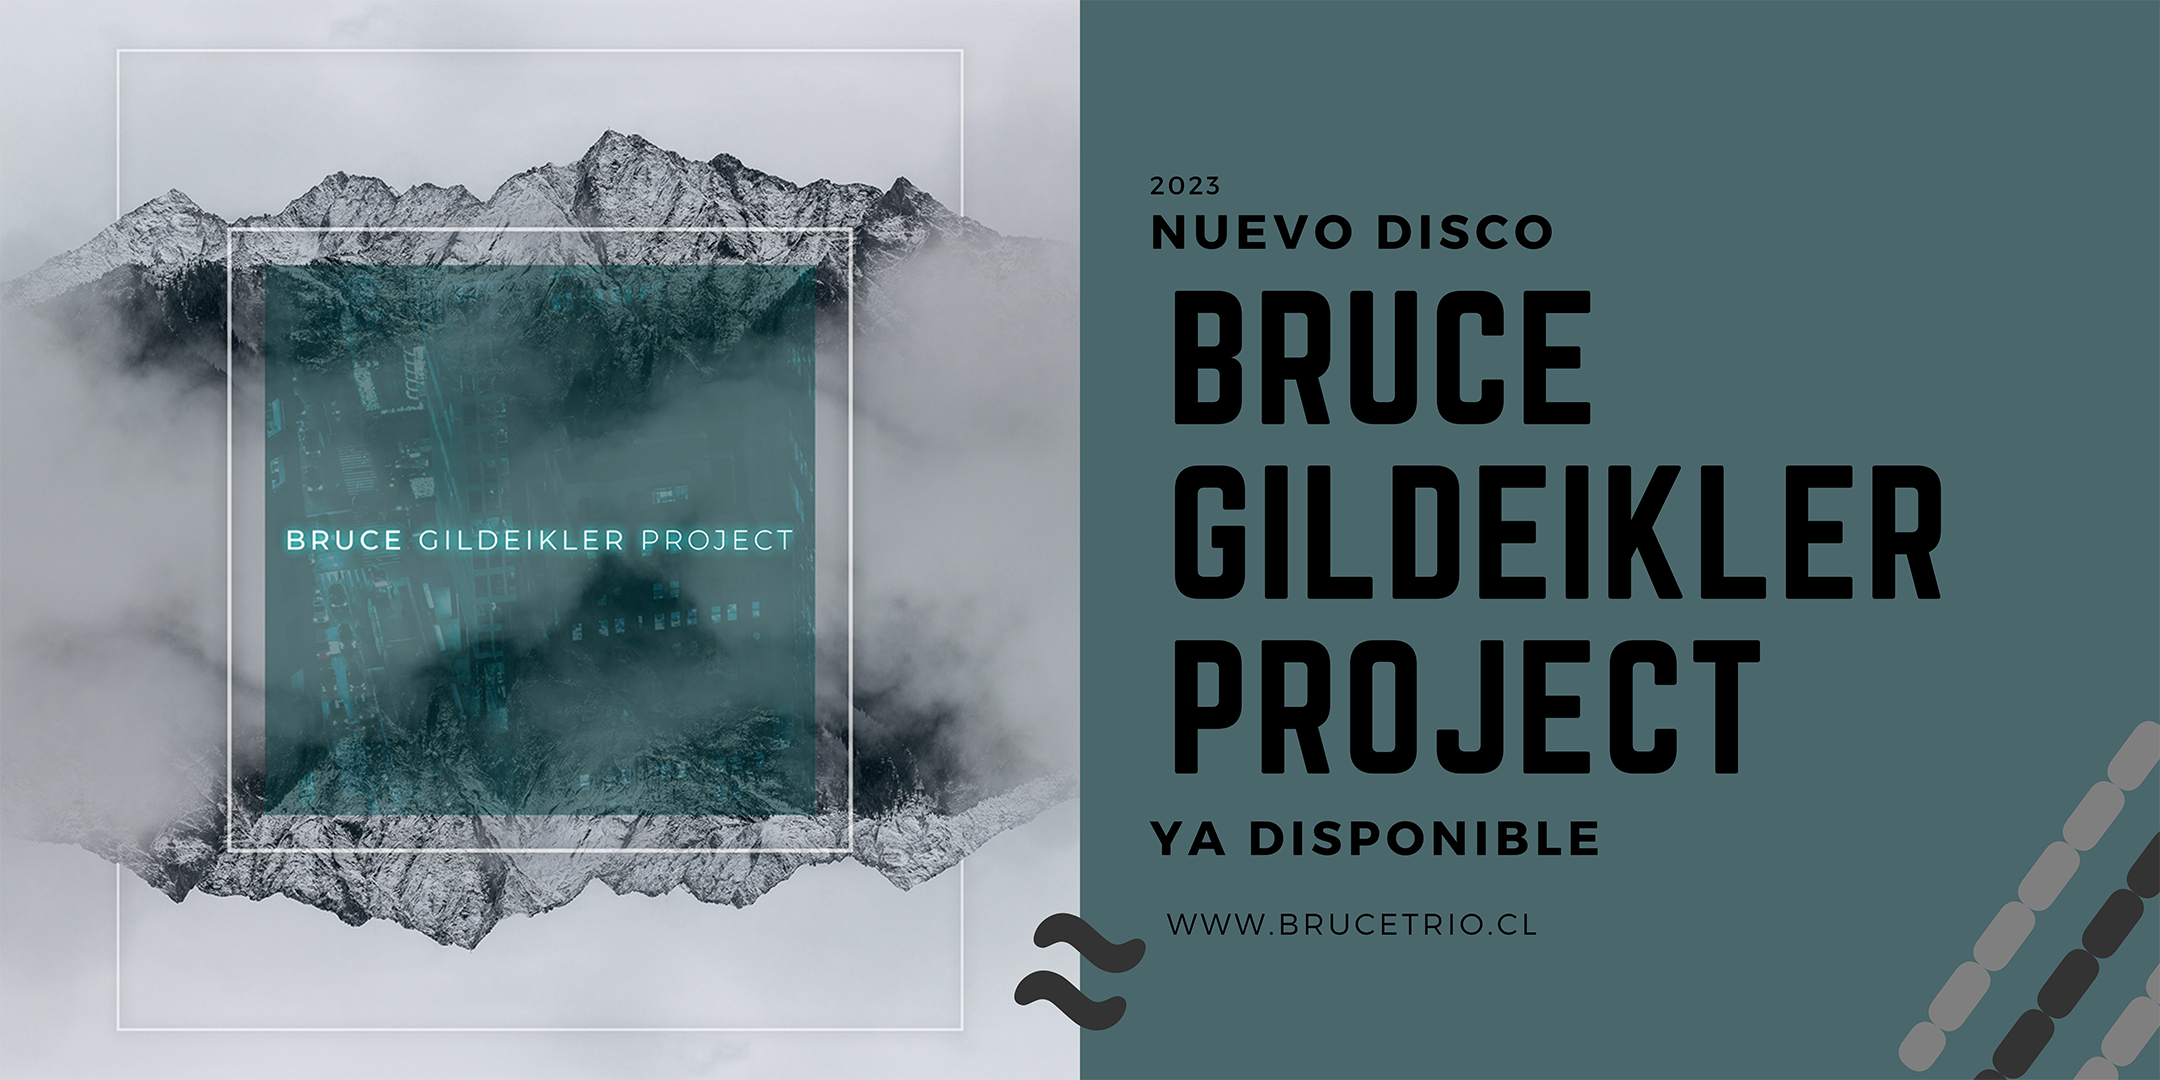 Nuevo-disco-banner-2